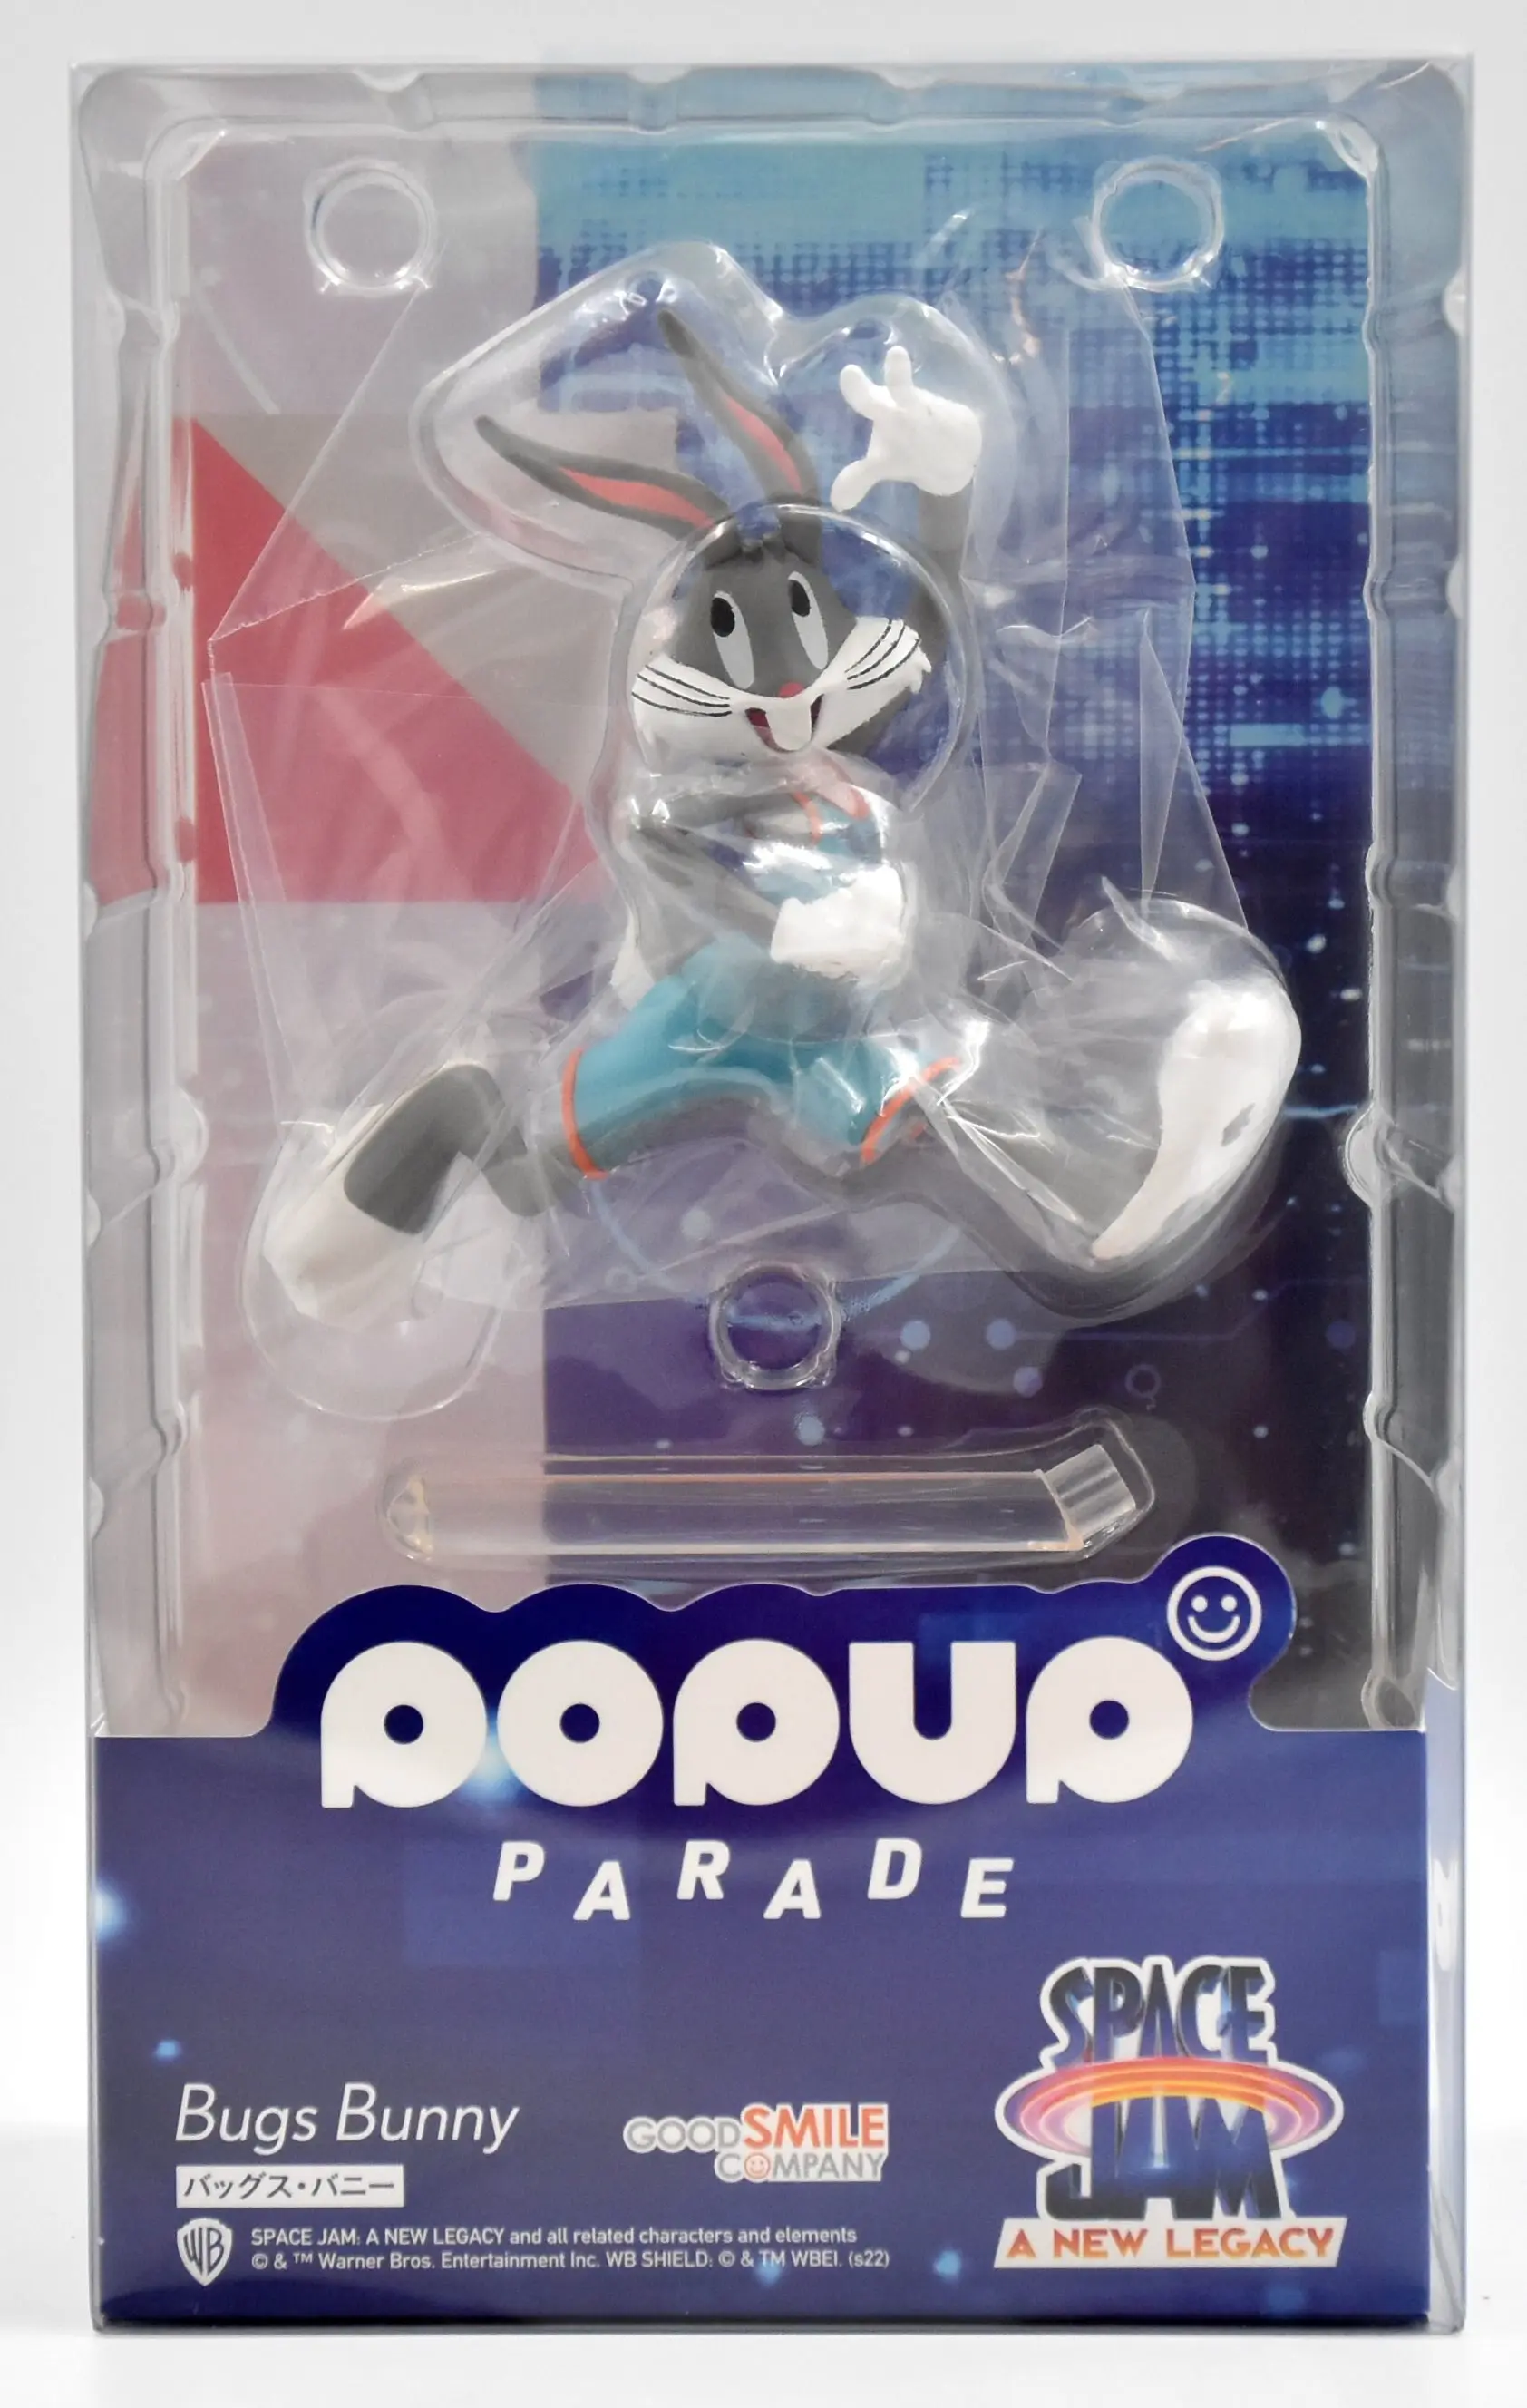 POP UP PARADE - Space Jam / Bugs Bunny